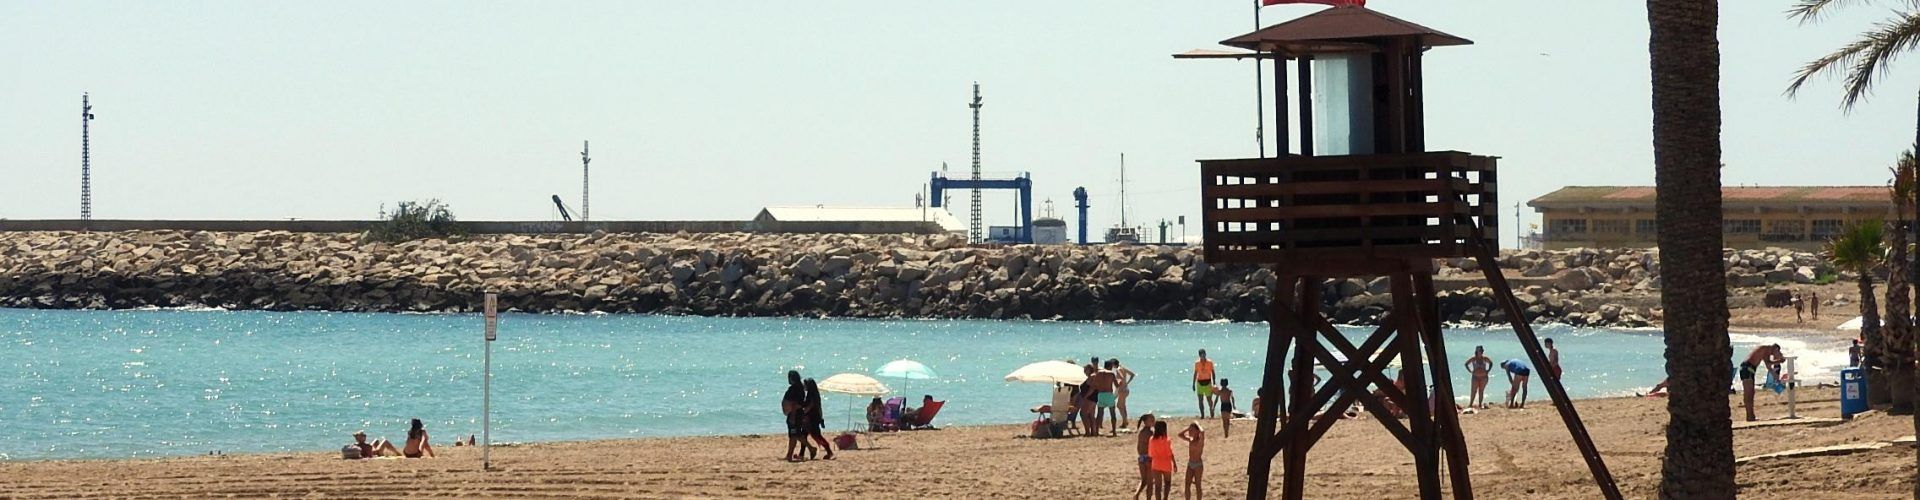 L’Ajuntament de Vinaròs tanca al bany les platges Fortí, Fora del Forat, Triador, Clot i Cossis